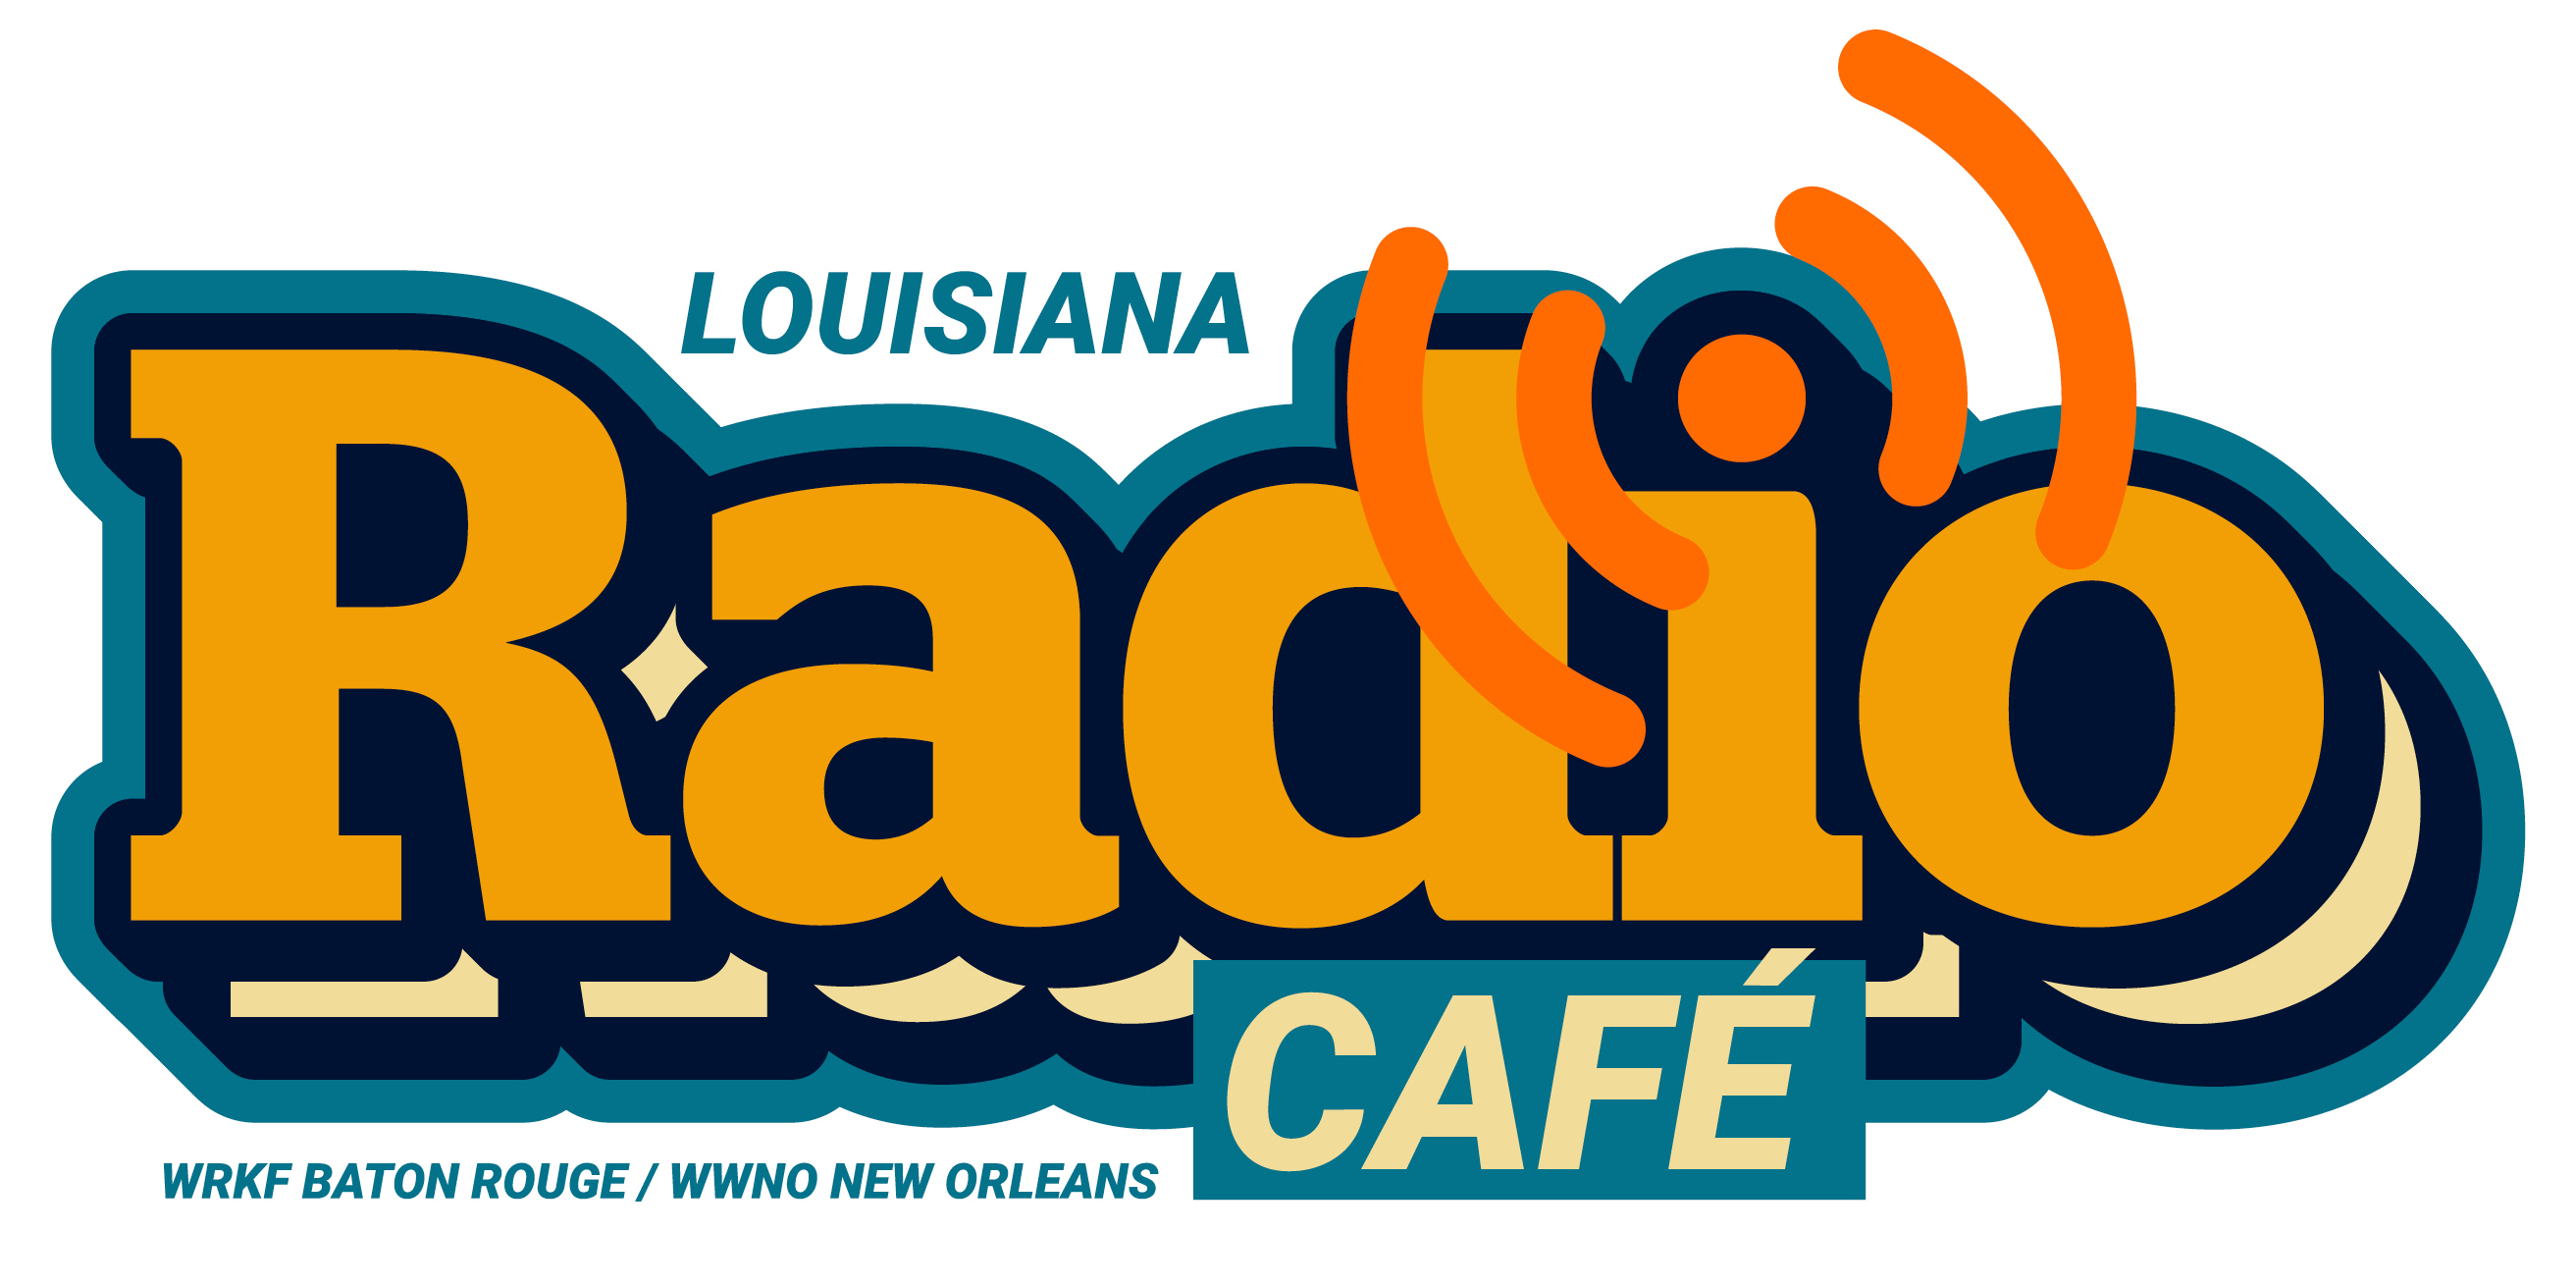 Louisiana Radio Cafe